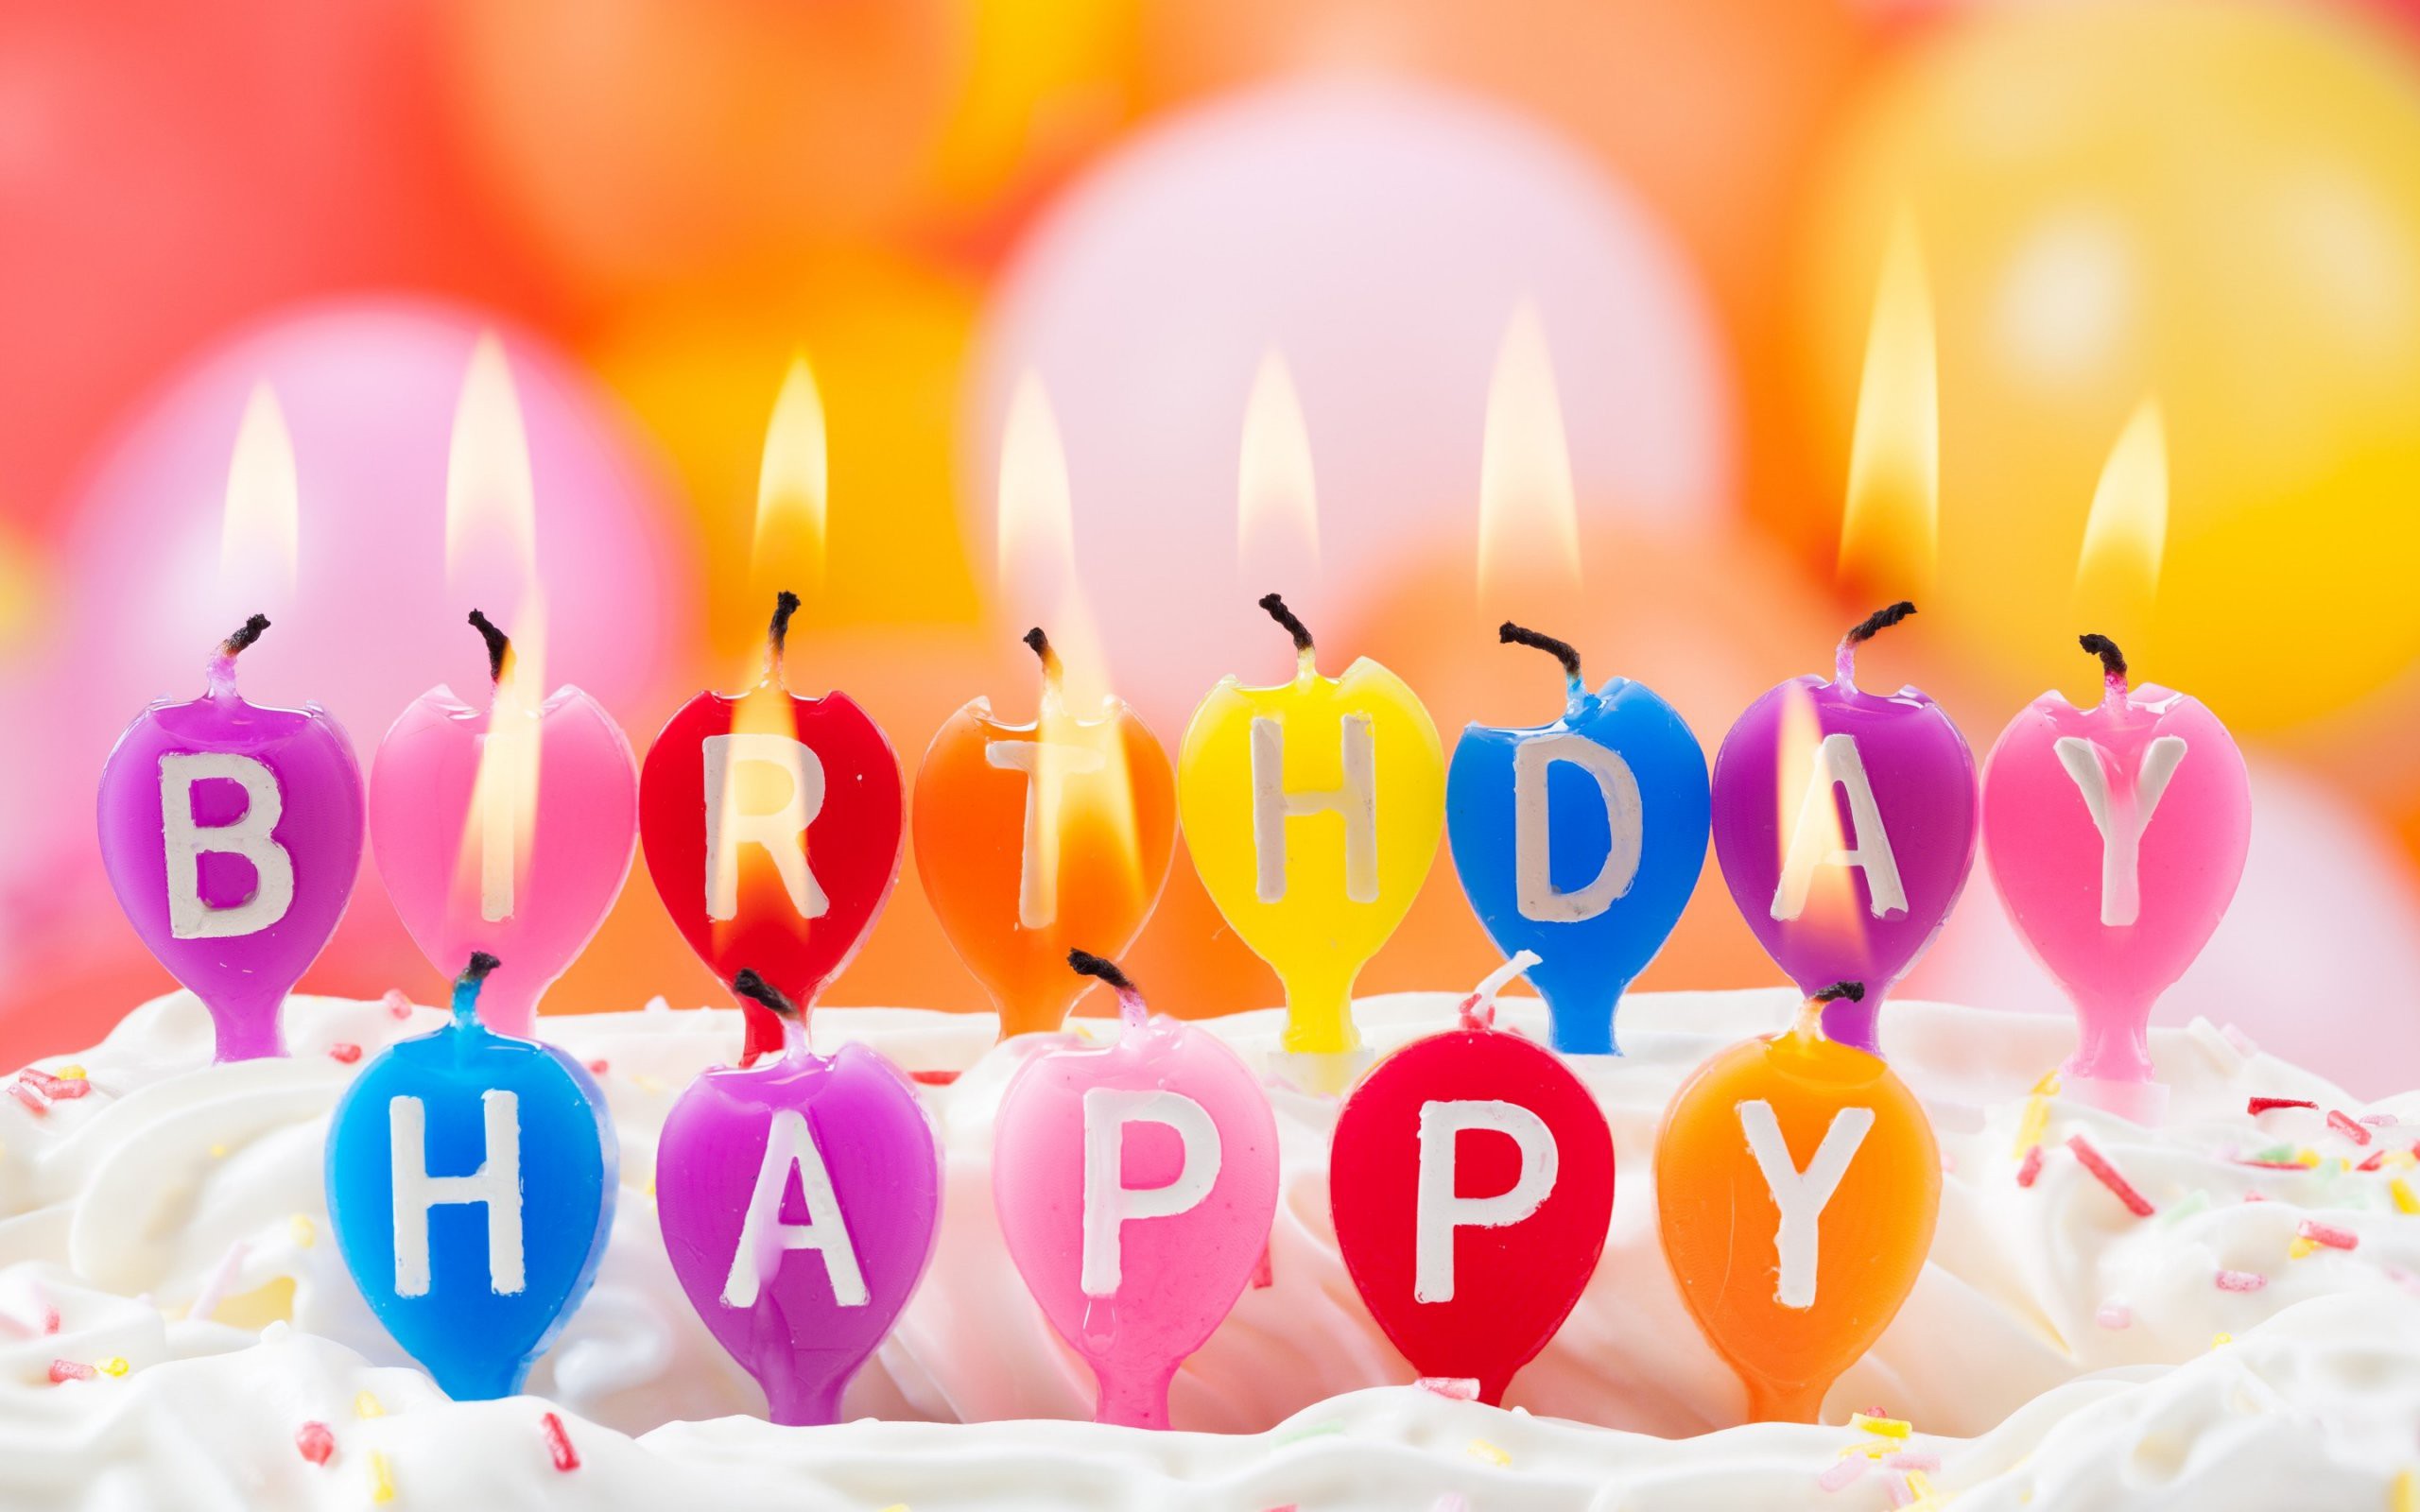 Hình nền chúc mừng sinh nhật: Hình nền chúc mừng sinh nhật sẽ giúp cho không gian của bạn trở nên đầy màu sắc và hạnh phúc. Hãy xem những hình nền sinh nhật bên dưới để lựa chọn cho mình kiểu hình ảnh phù hợp nhất.